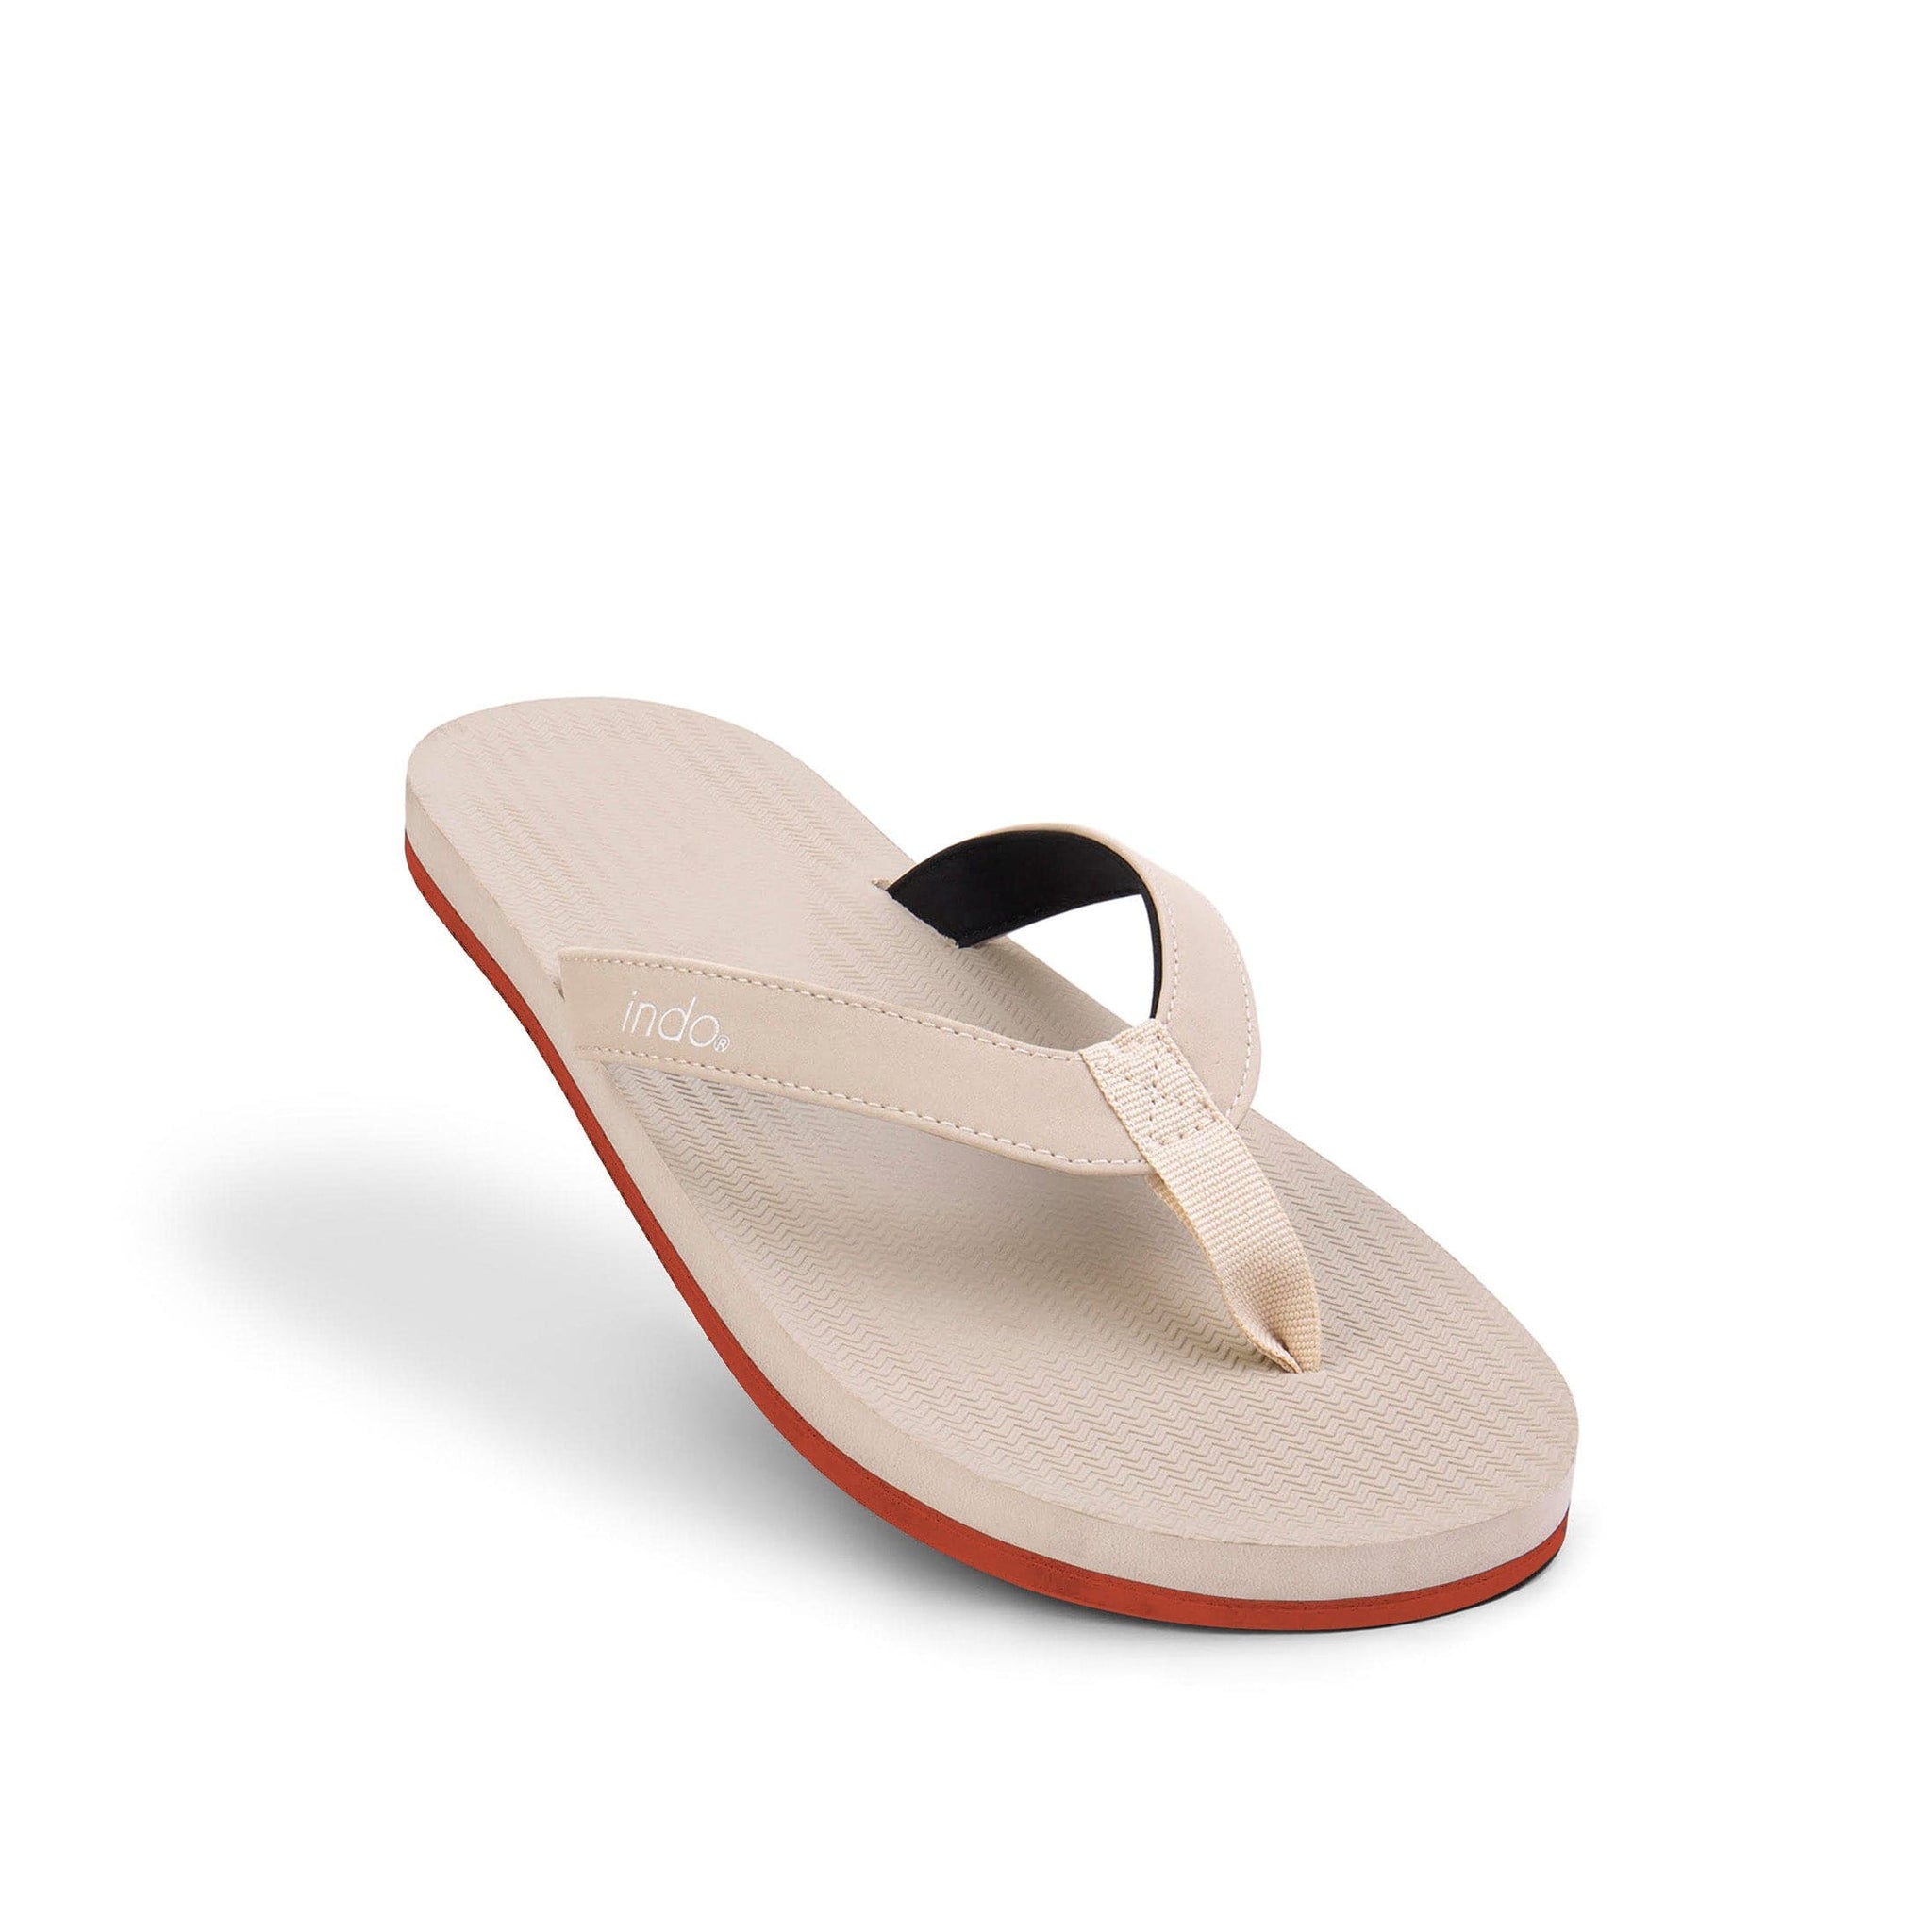 Men’s Flip Flops Sneaker Sole - Sea Salt/Orange Sole